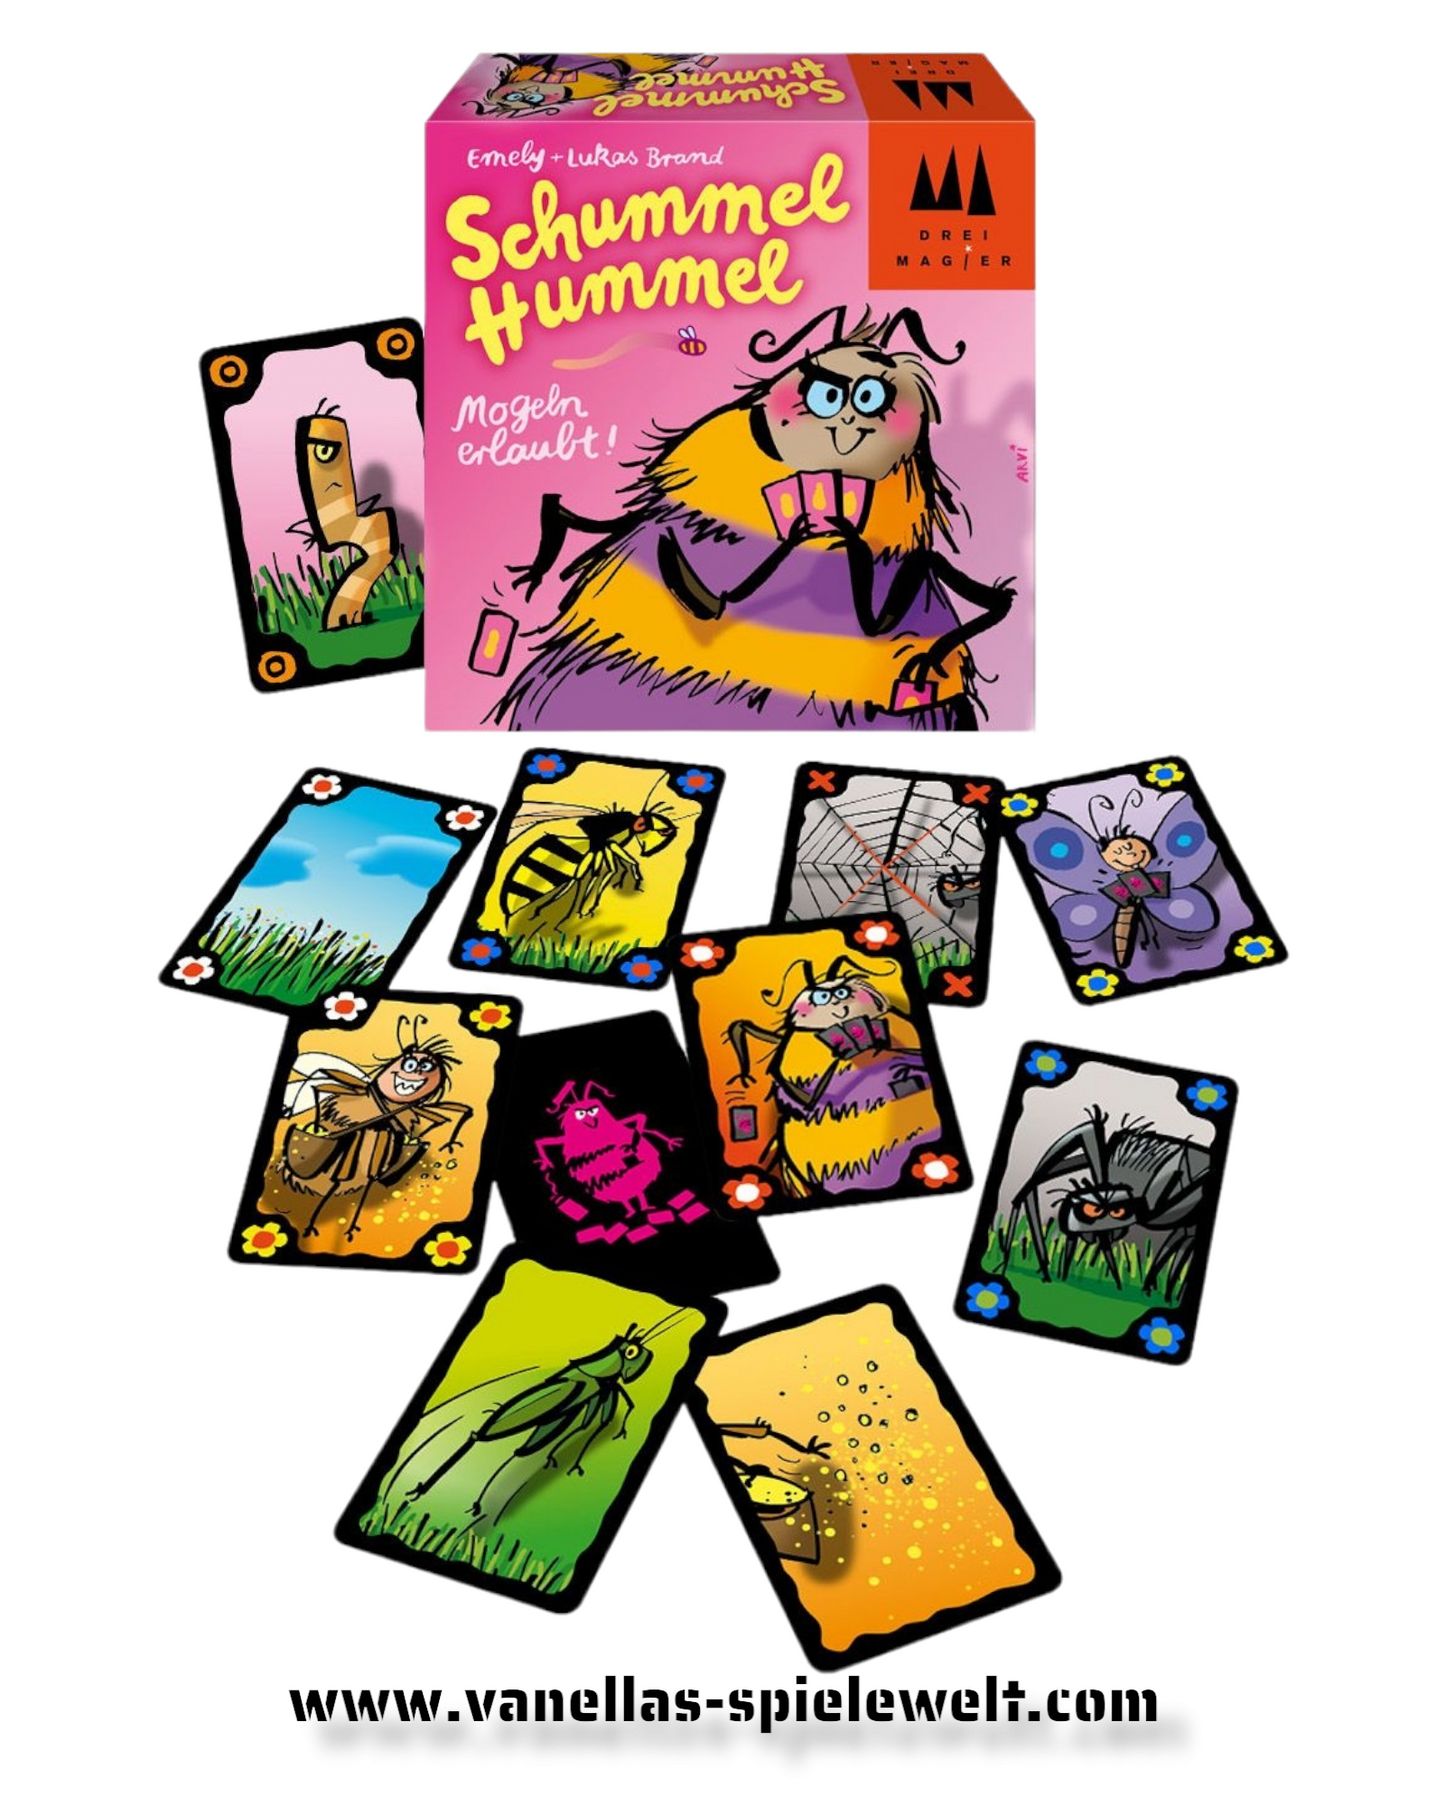 Schummel Hummel - Drei Magier Spiele Vanellas Spielewelt